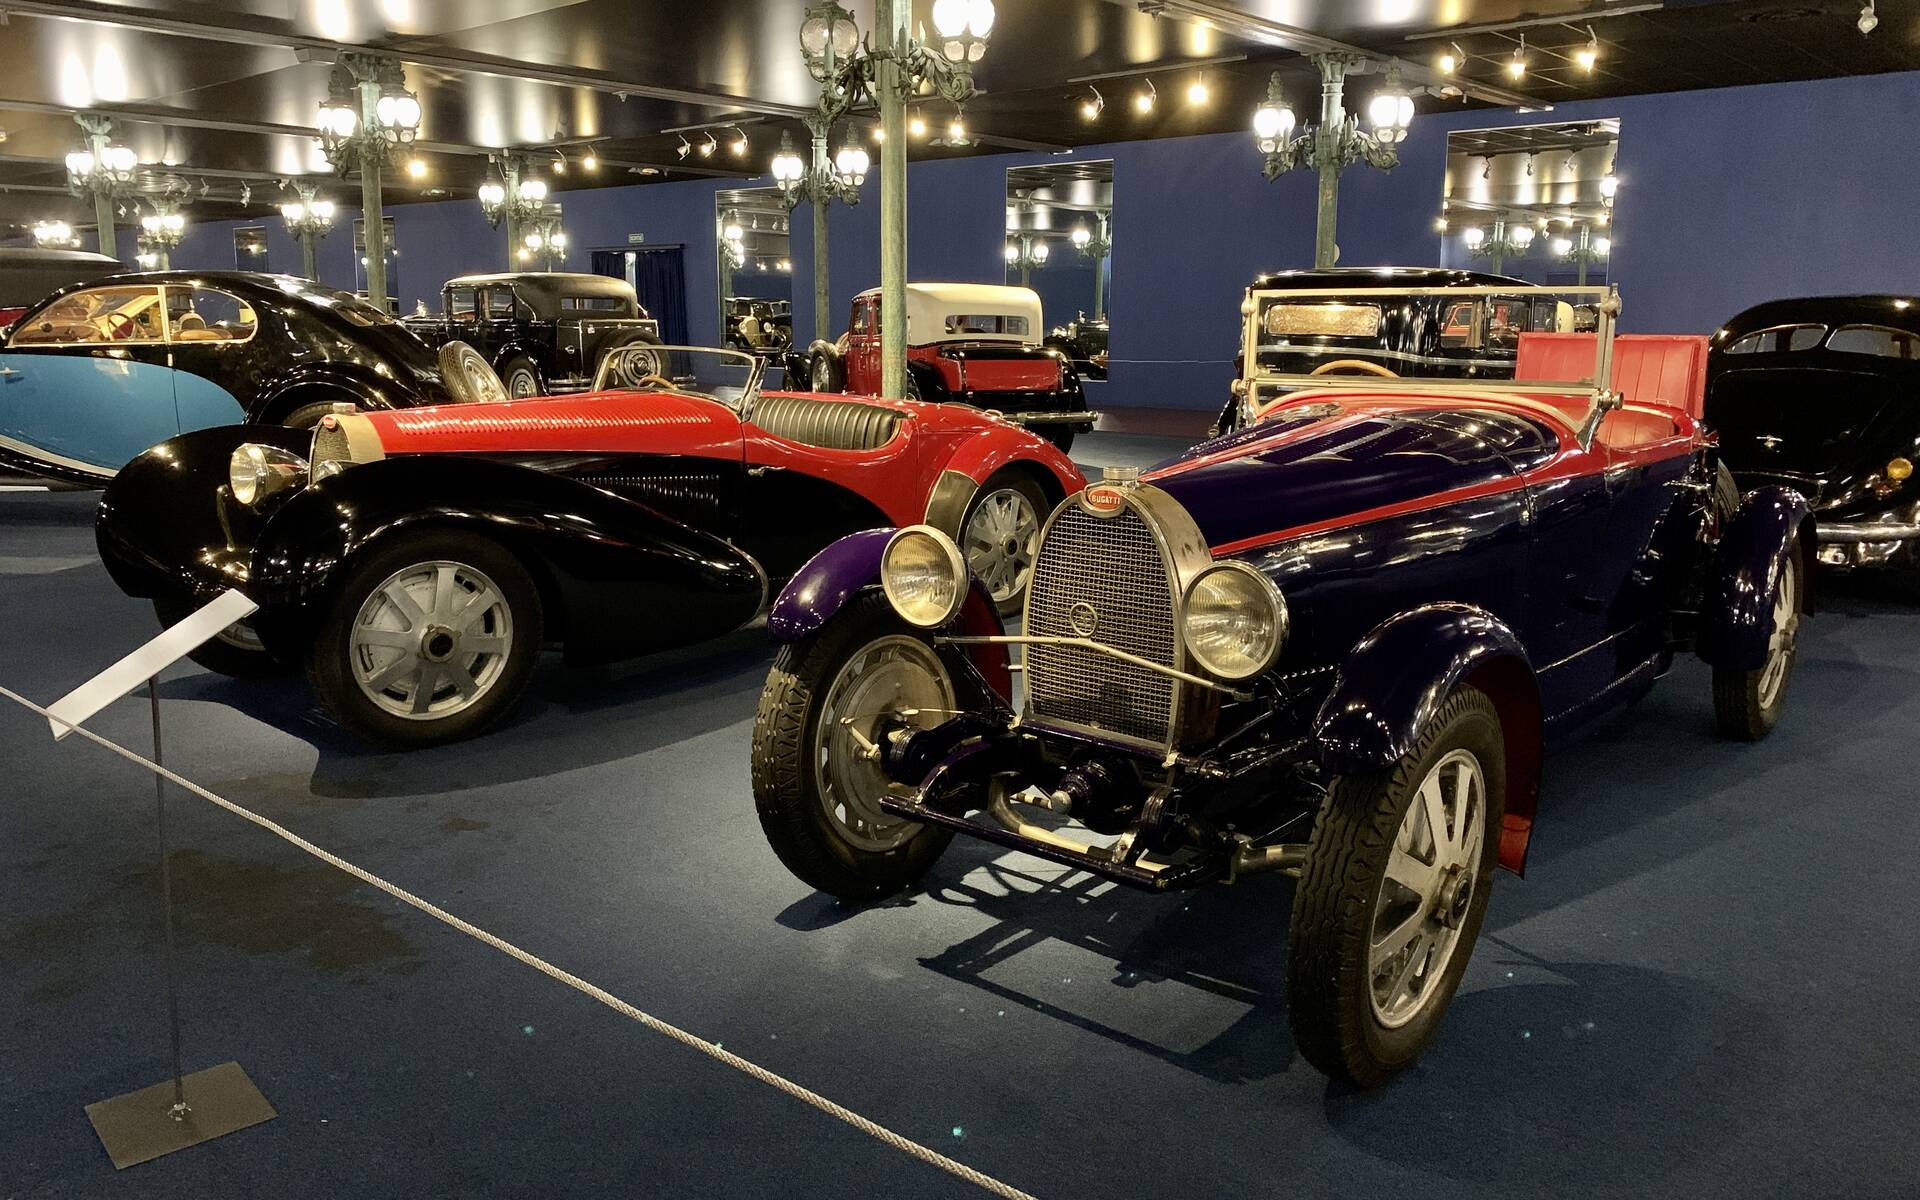 En photos : une centaine de Bugatti réunies dans un même musée 503093-en-photos-des-dizaines-de-bugatti-reunies-dans-un-meme-musee